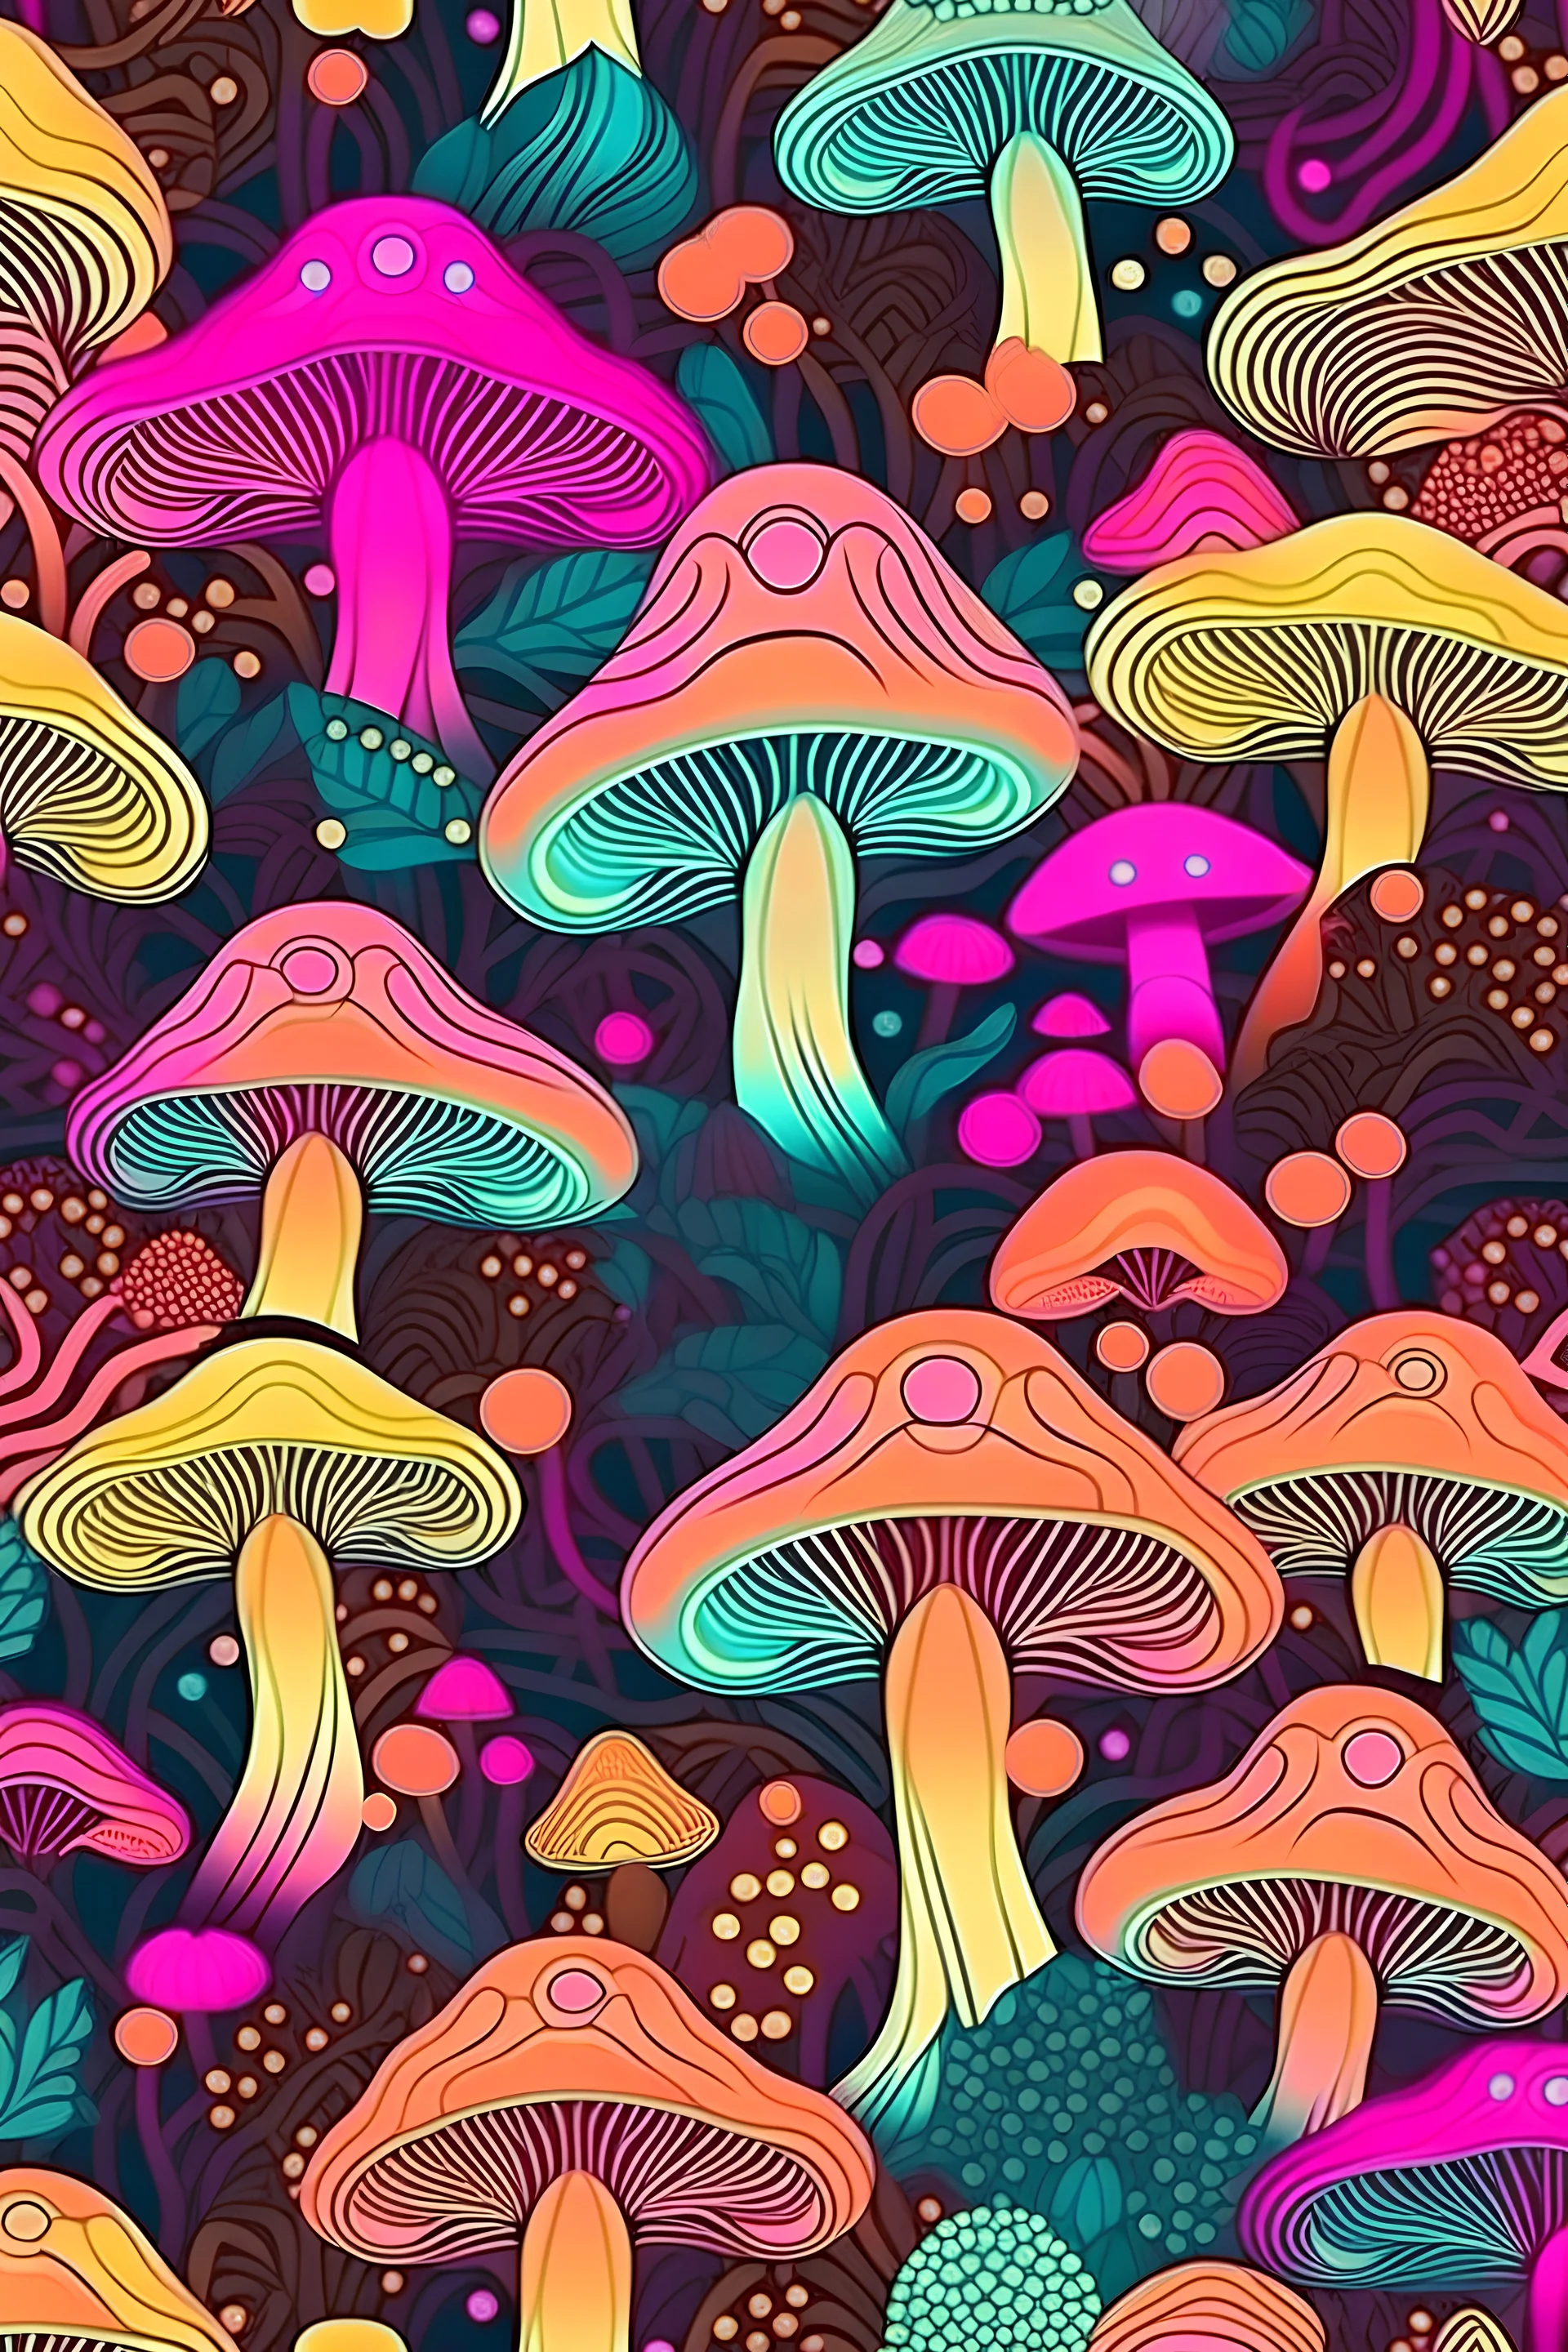 простой психоделический рисунок на фоне леса и травы необычного цвета с грибами и ветками деревьев тоже необычного цвета